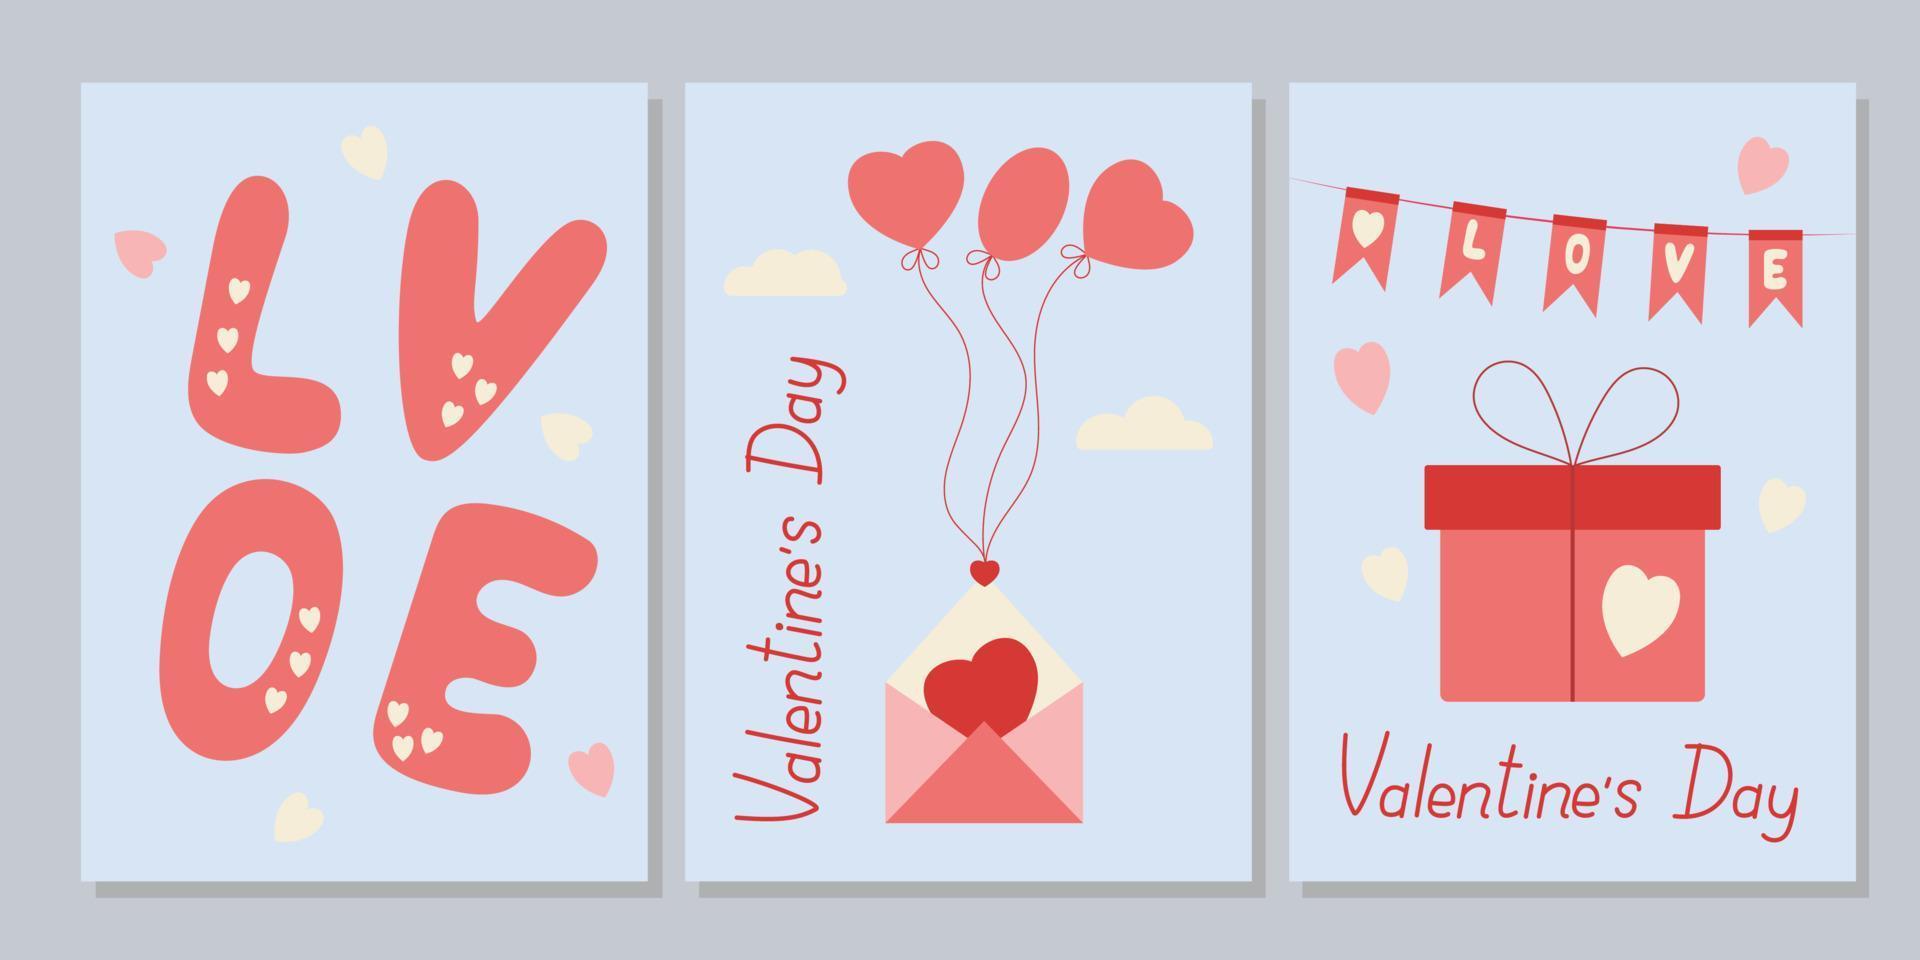 modelo de cartões imprimíveis para dia dos namorados. disposição em a6. conjunto de cartões de dia dos namorados. rabiscos e ilustrações vetoriais de esboços. vetor